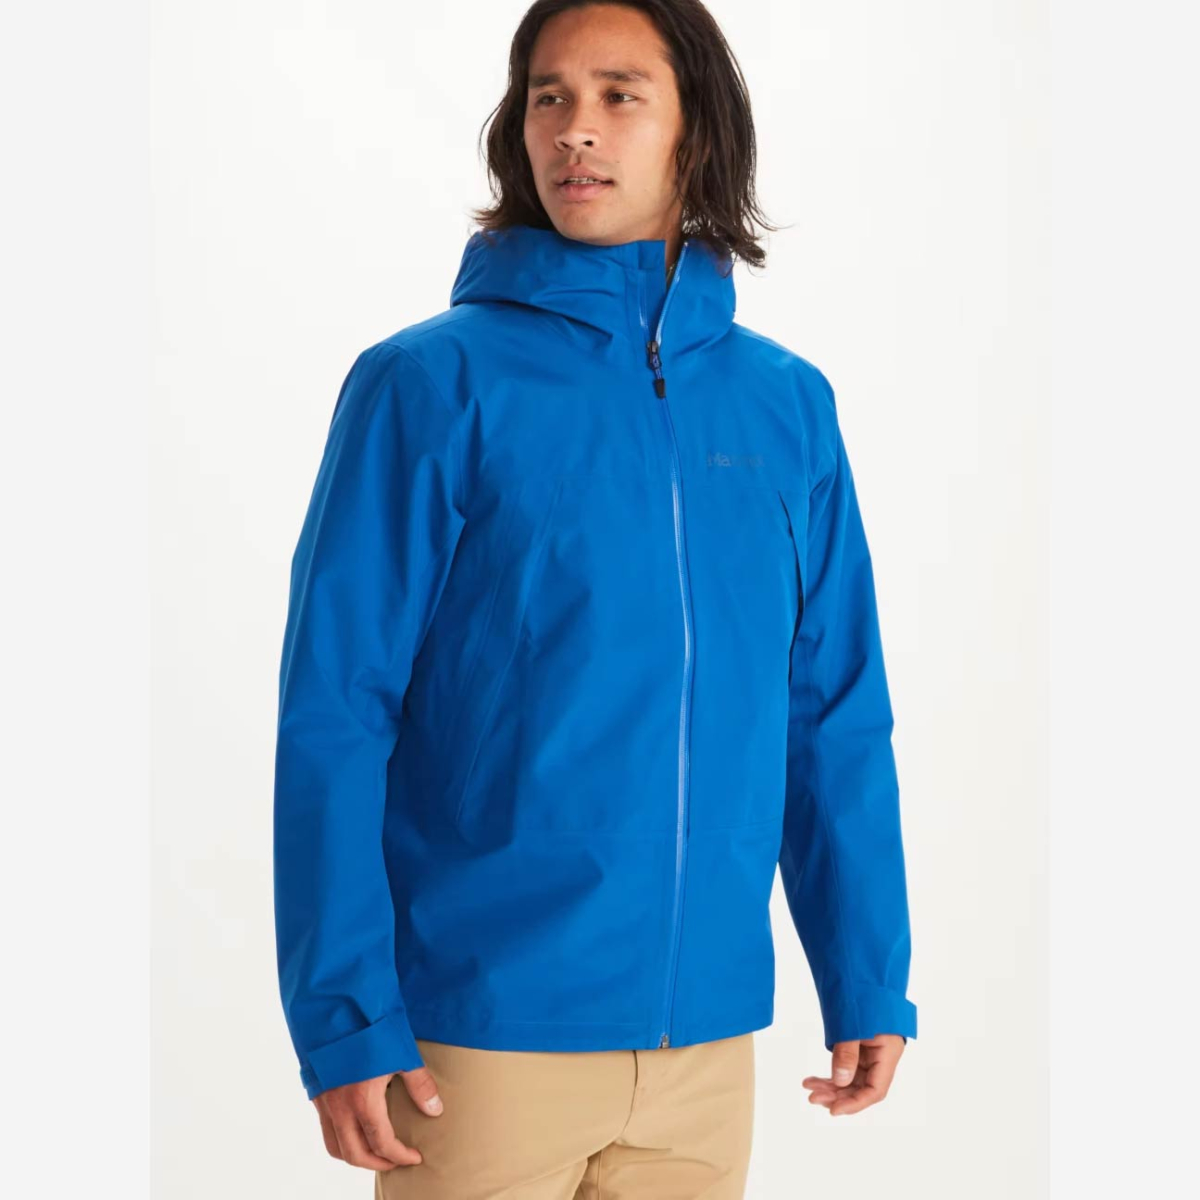 MARMOT Men's GORE-TEX Minimalist Jacket - Big, Lightweight, Waterproof